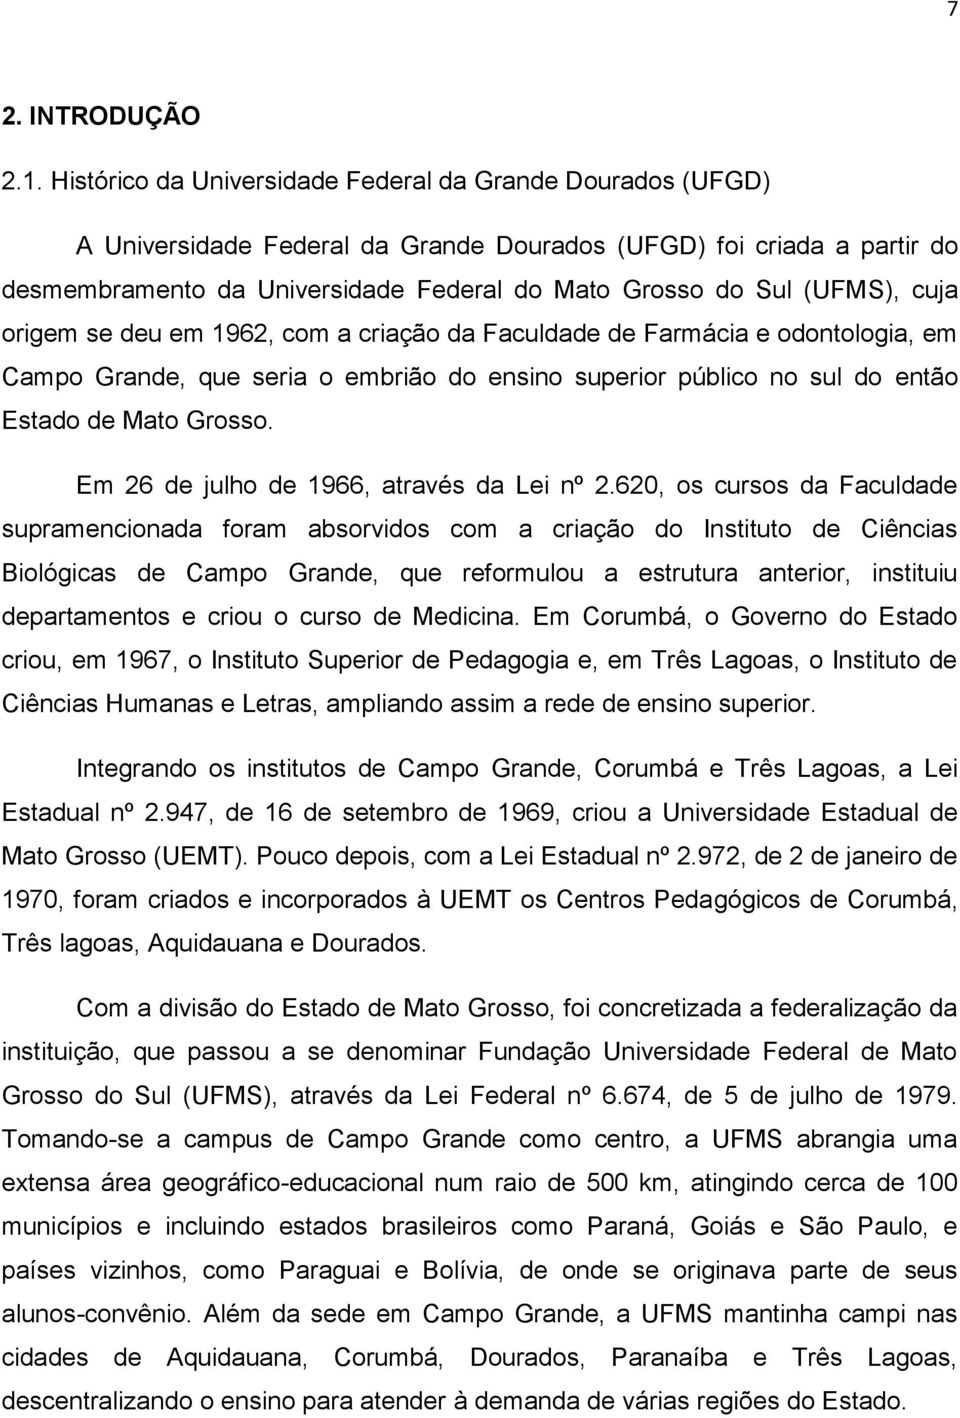 (UFMS), cuja origem se deu em 1962, com a criação da Faculdade de Farmácia e odontologia, em Campo Grande, que seria o embrião do ensino superior público no sul do então Estado de Mato Grosso.